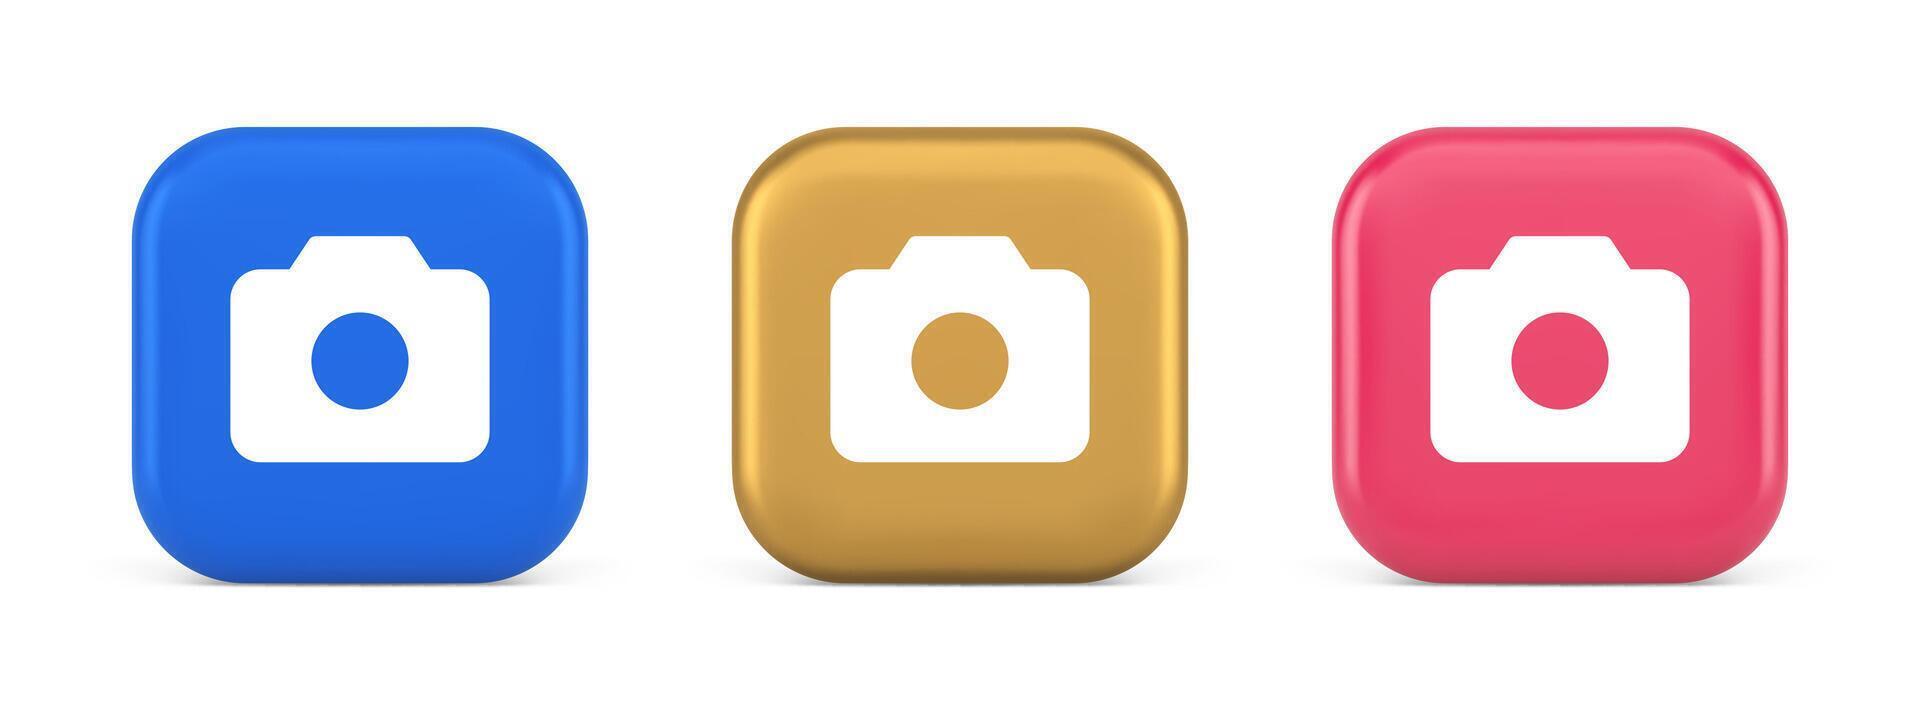 caméra multimédia application contenu création numérique bouton 3d réaliste icône vecteur